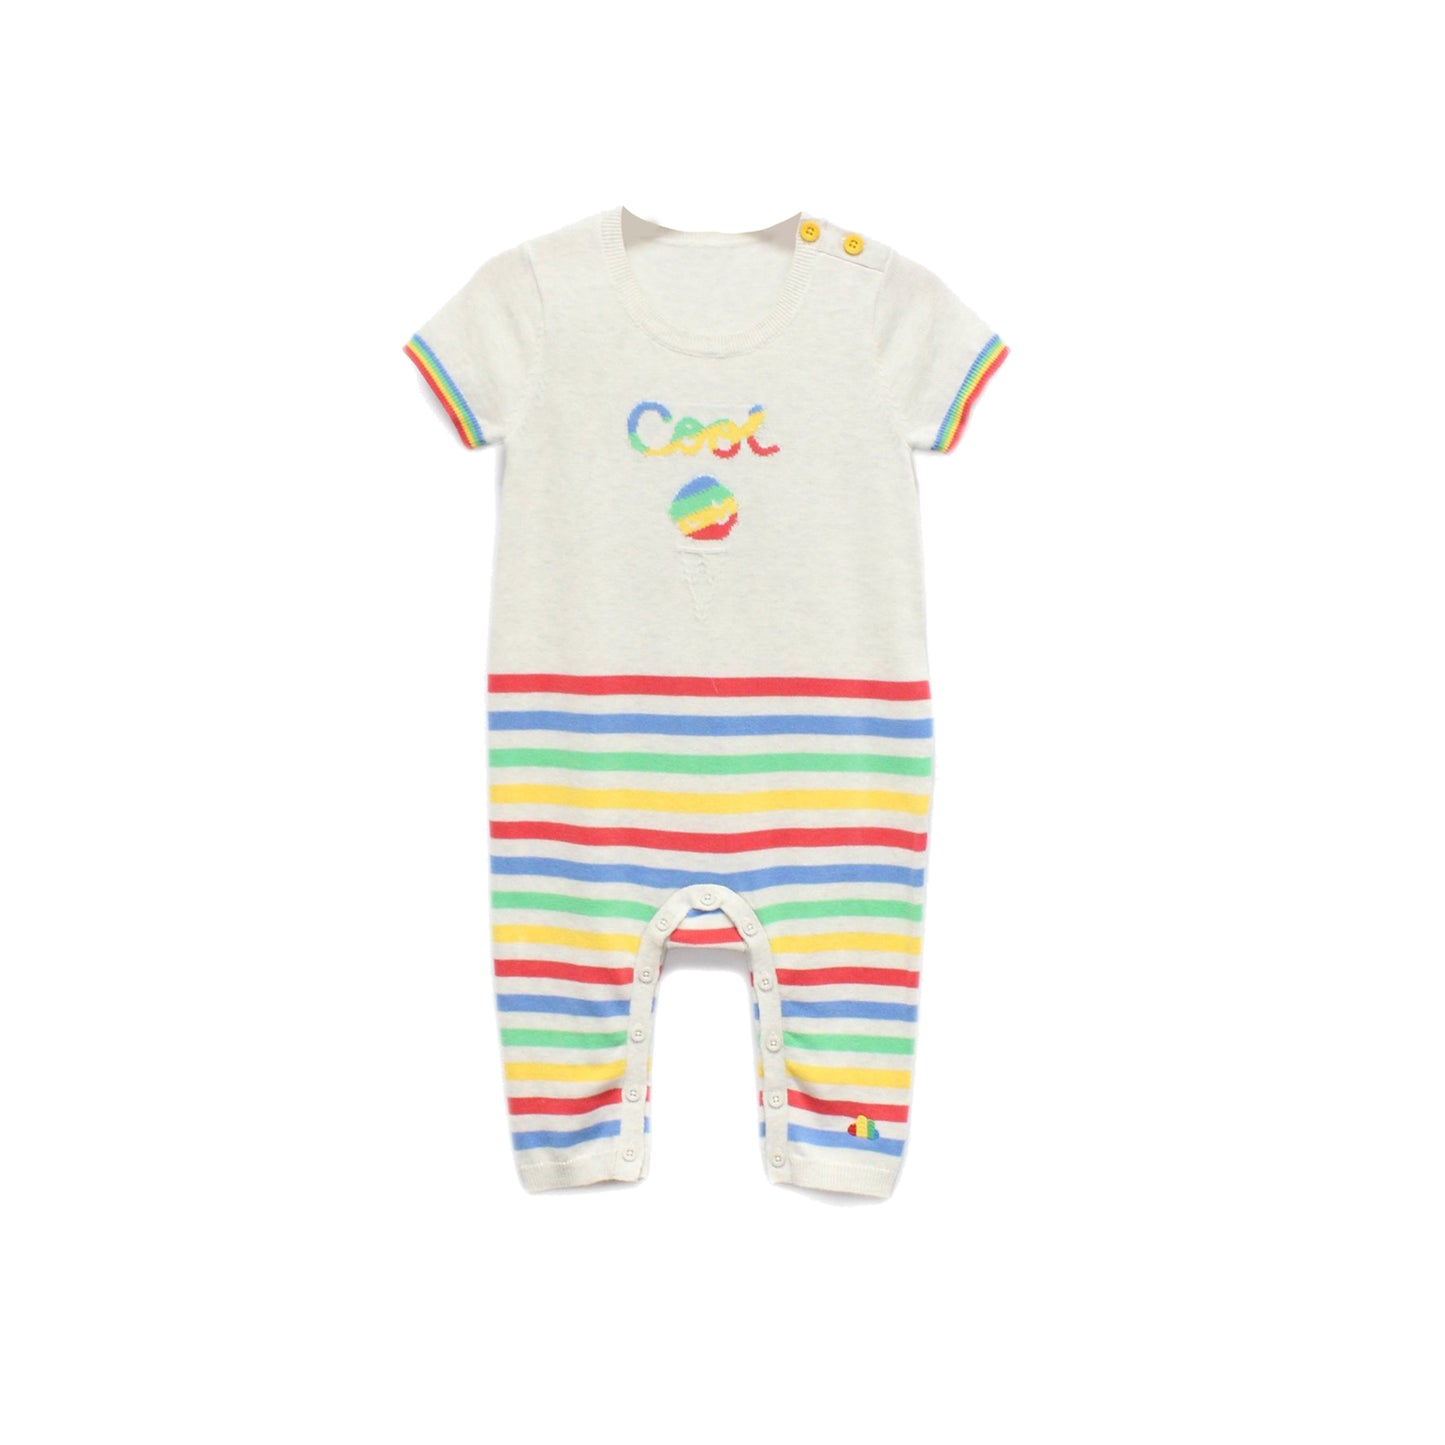 童裝BB衫有機棉 - 字母系列彩虹橫間短袖連體衣